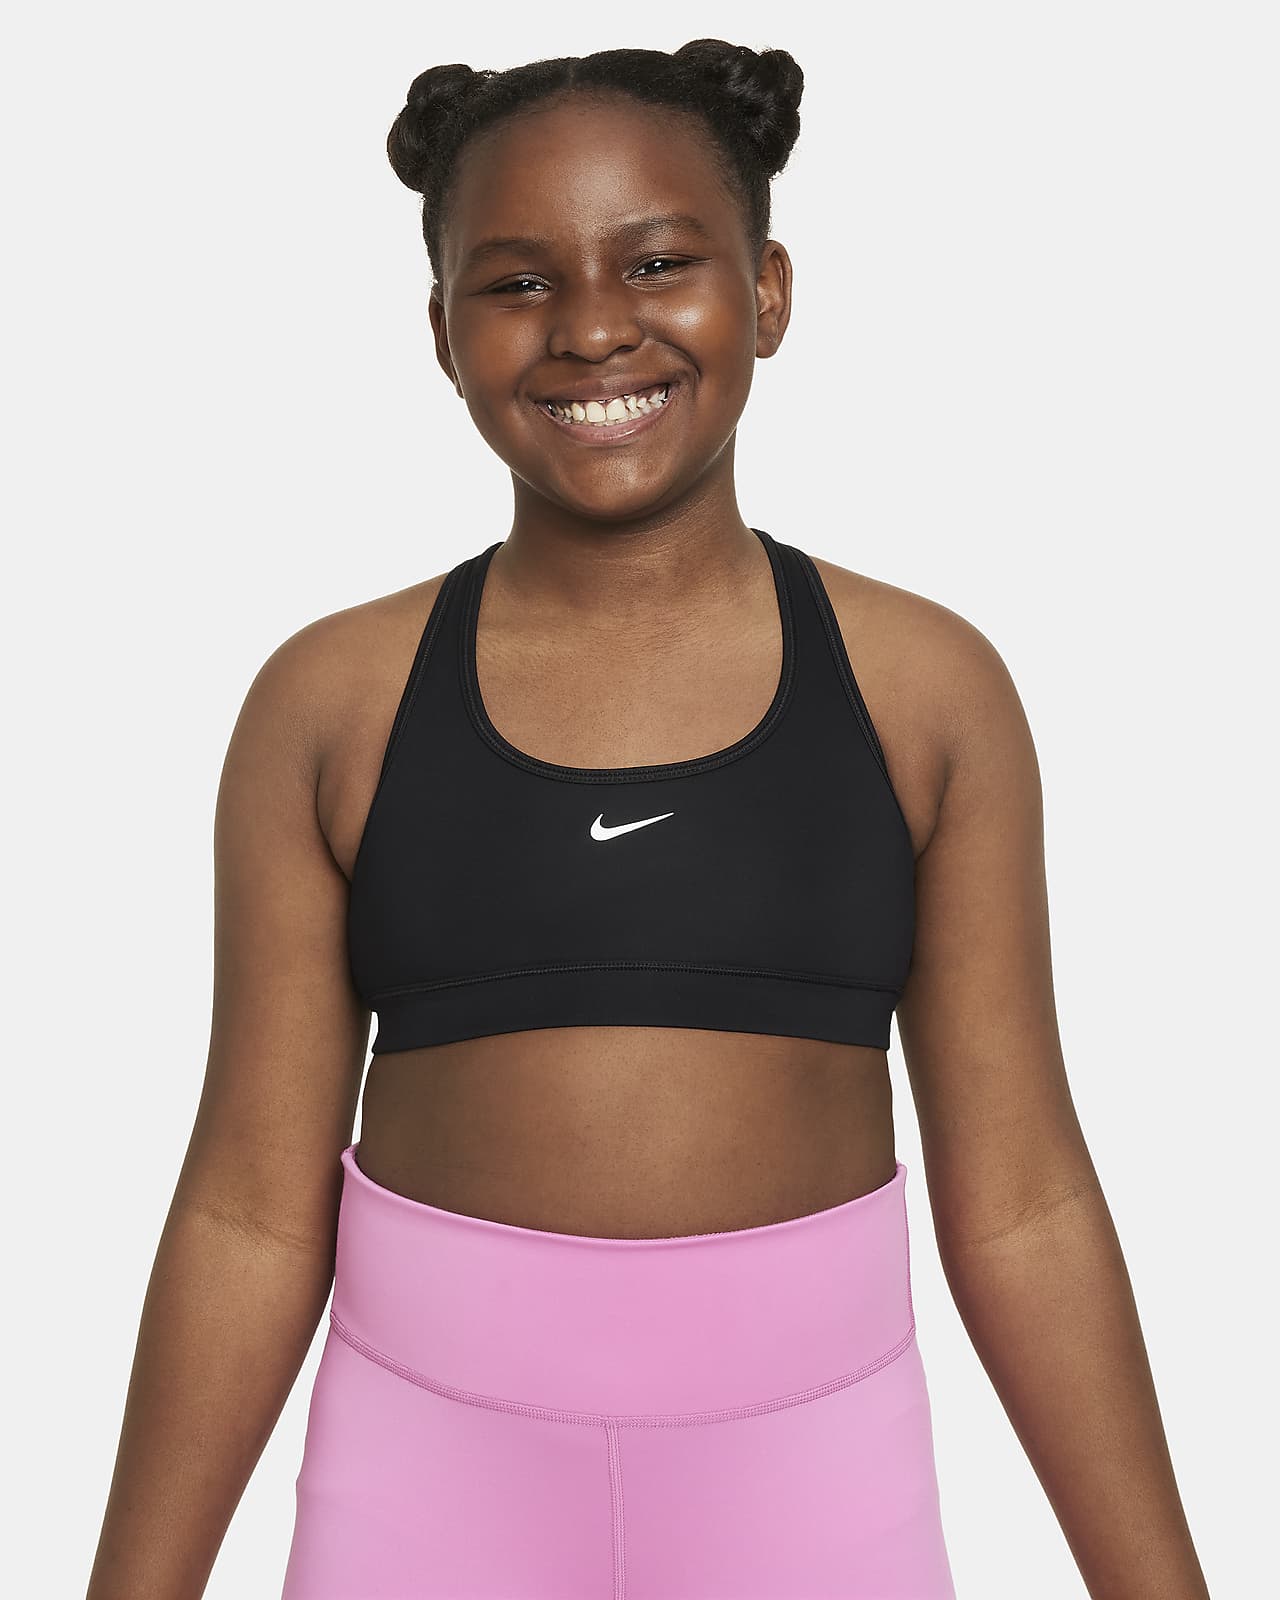 Αθλητικός στηθόδεσμος Nike Swoosh για μεγάλα κορίτσια (μεγαλύτερο μέγεθος)